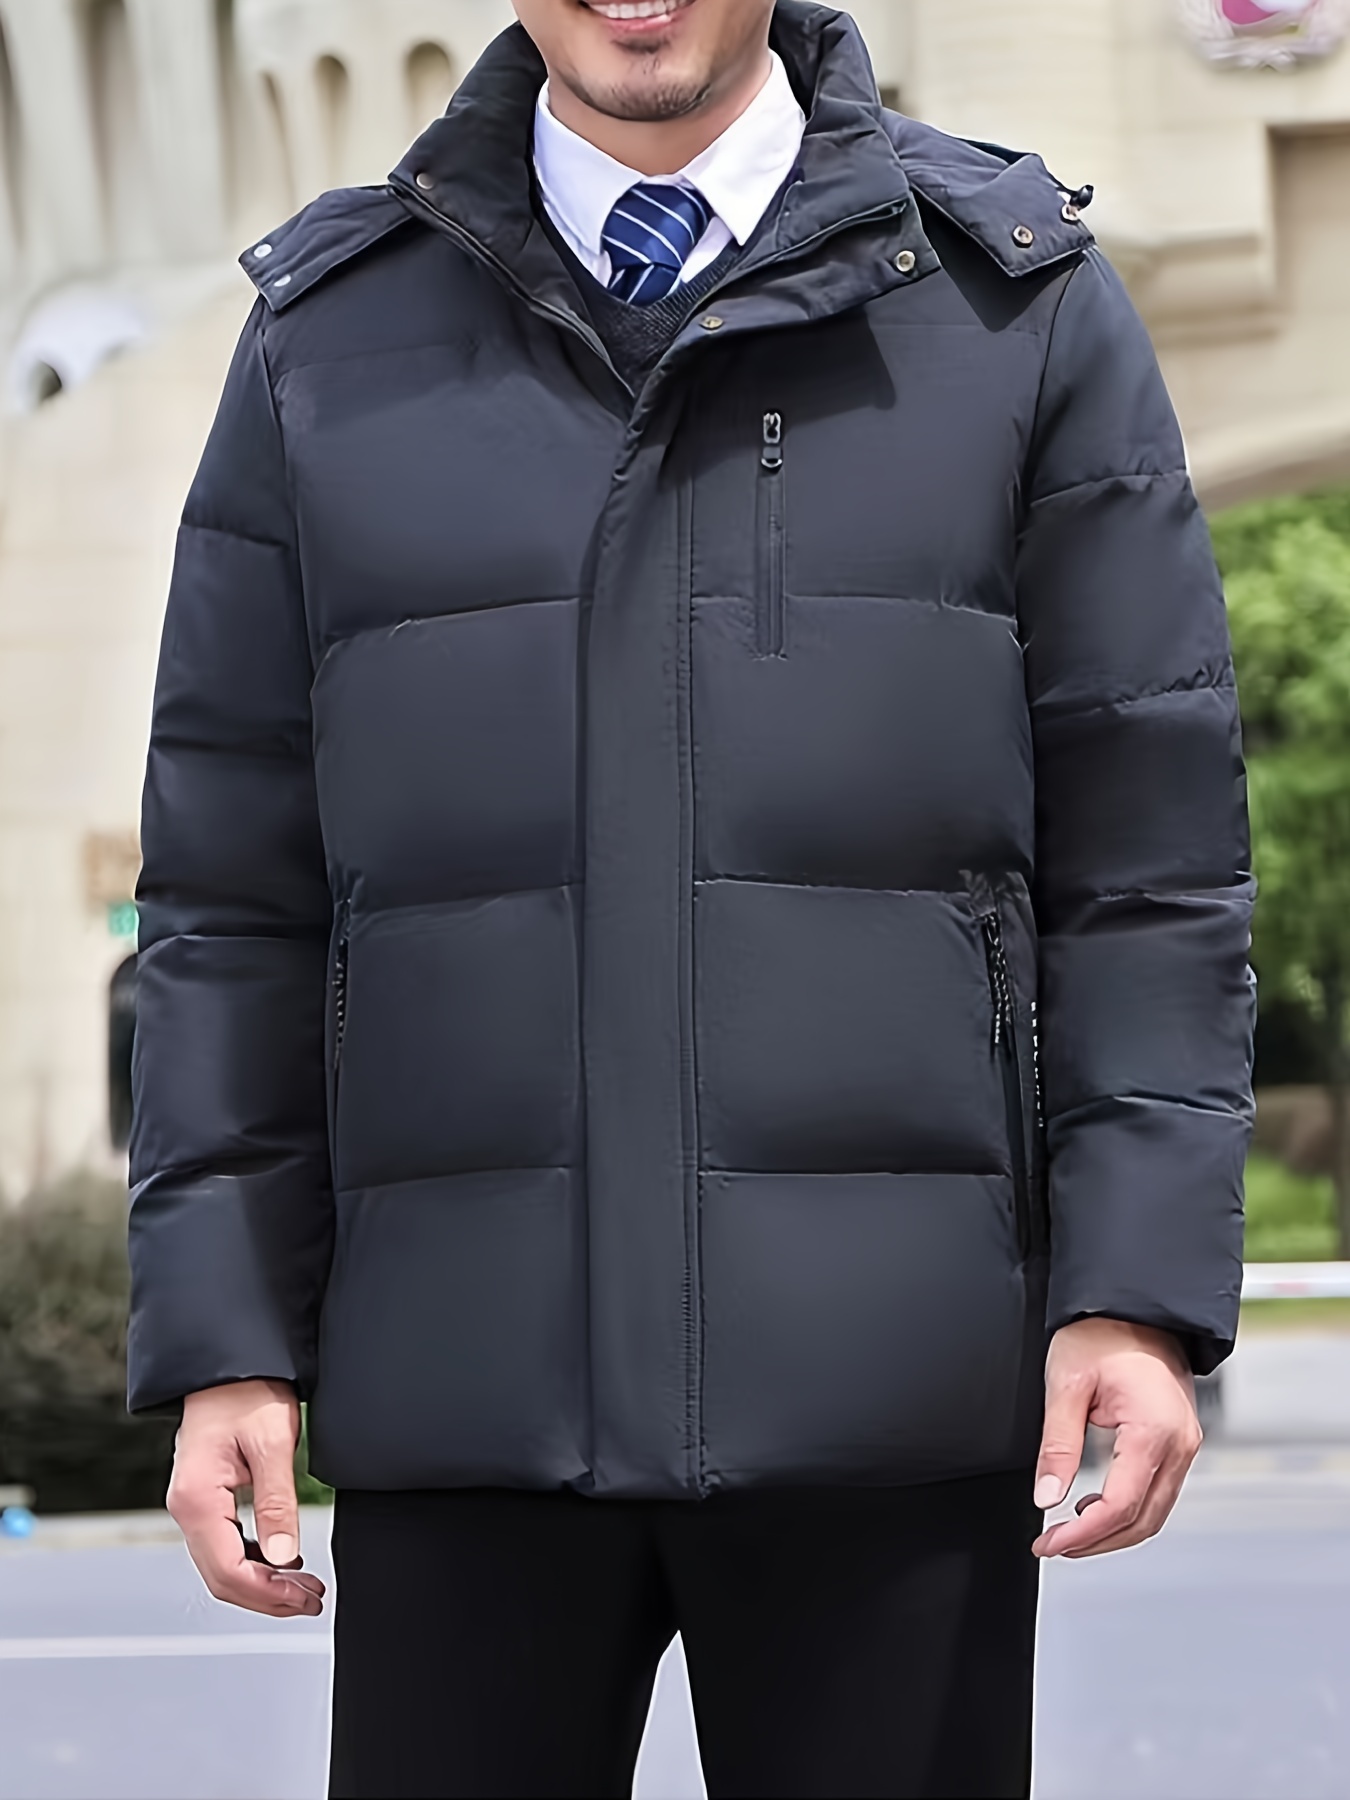 New Men's Casual Short Down Jacket Winter Outdoor Warm Jacket ...